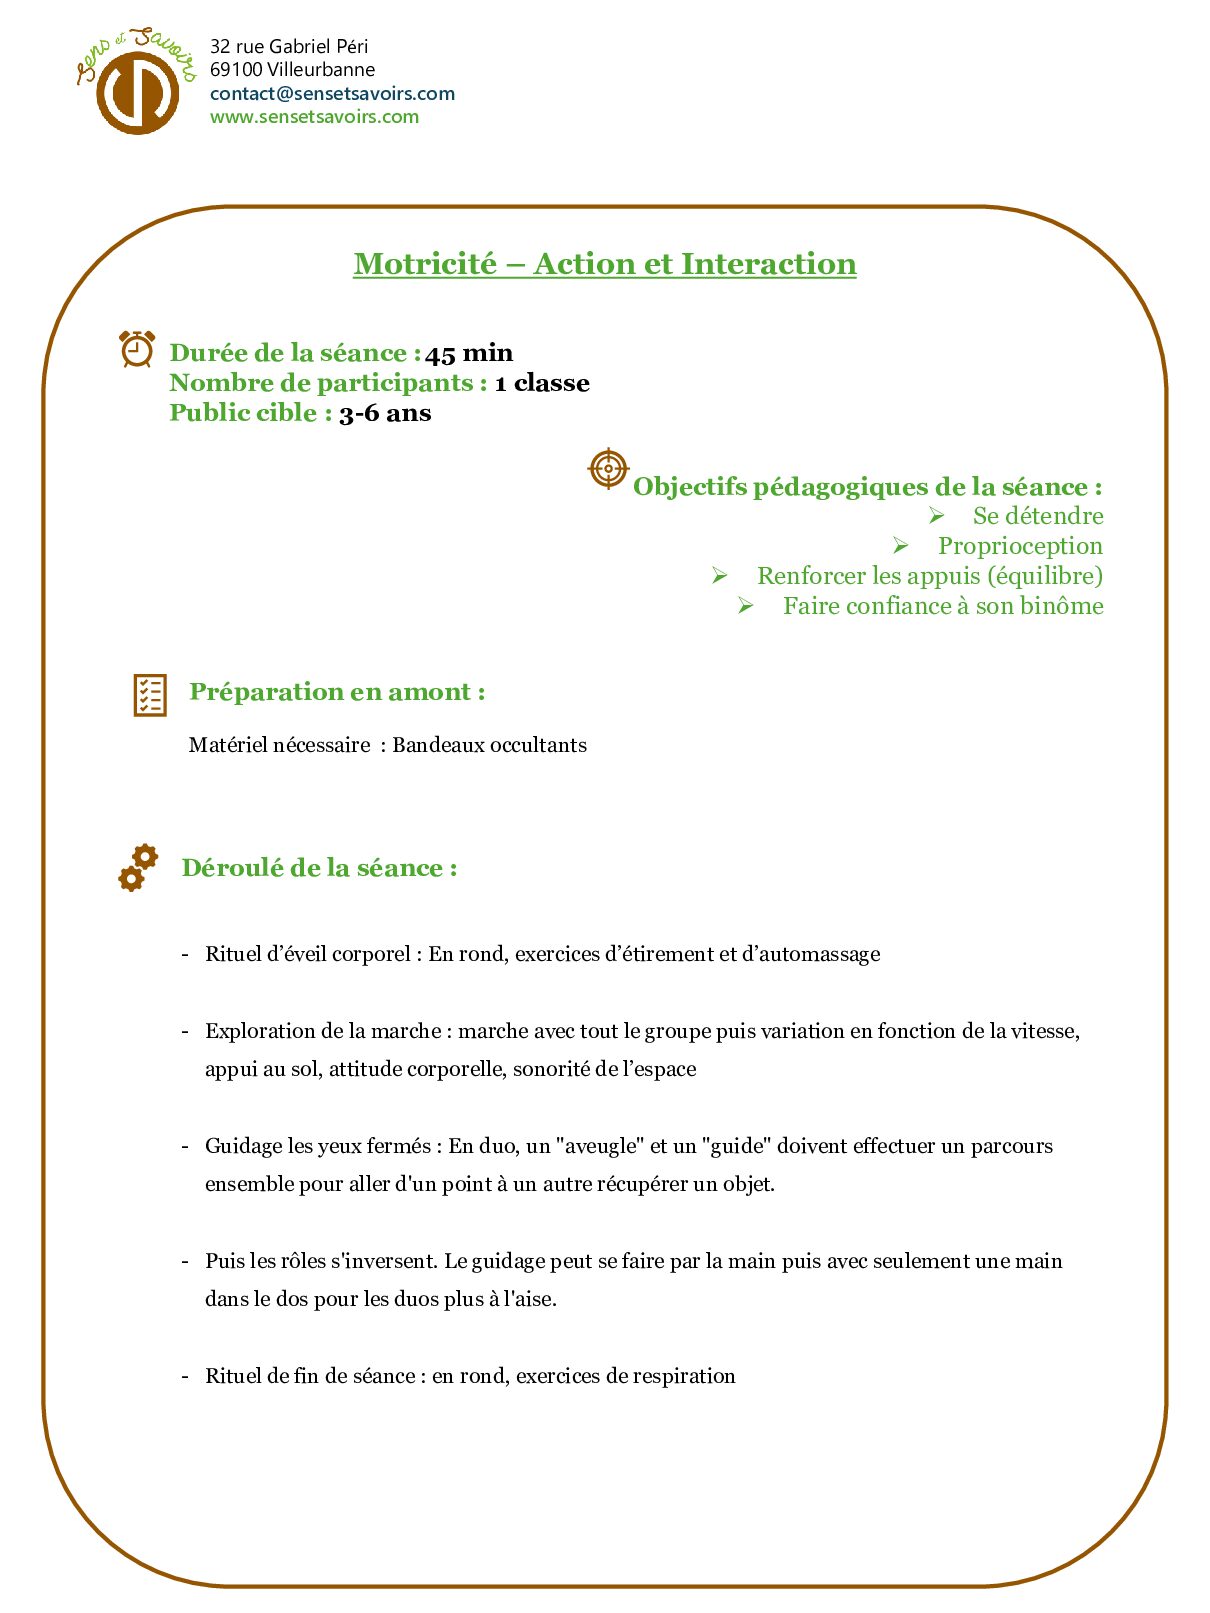 Motricite Action et Interaction pdf